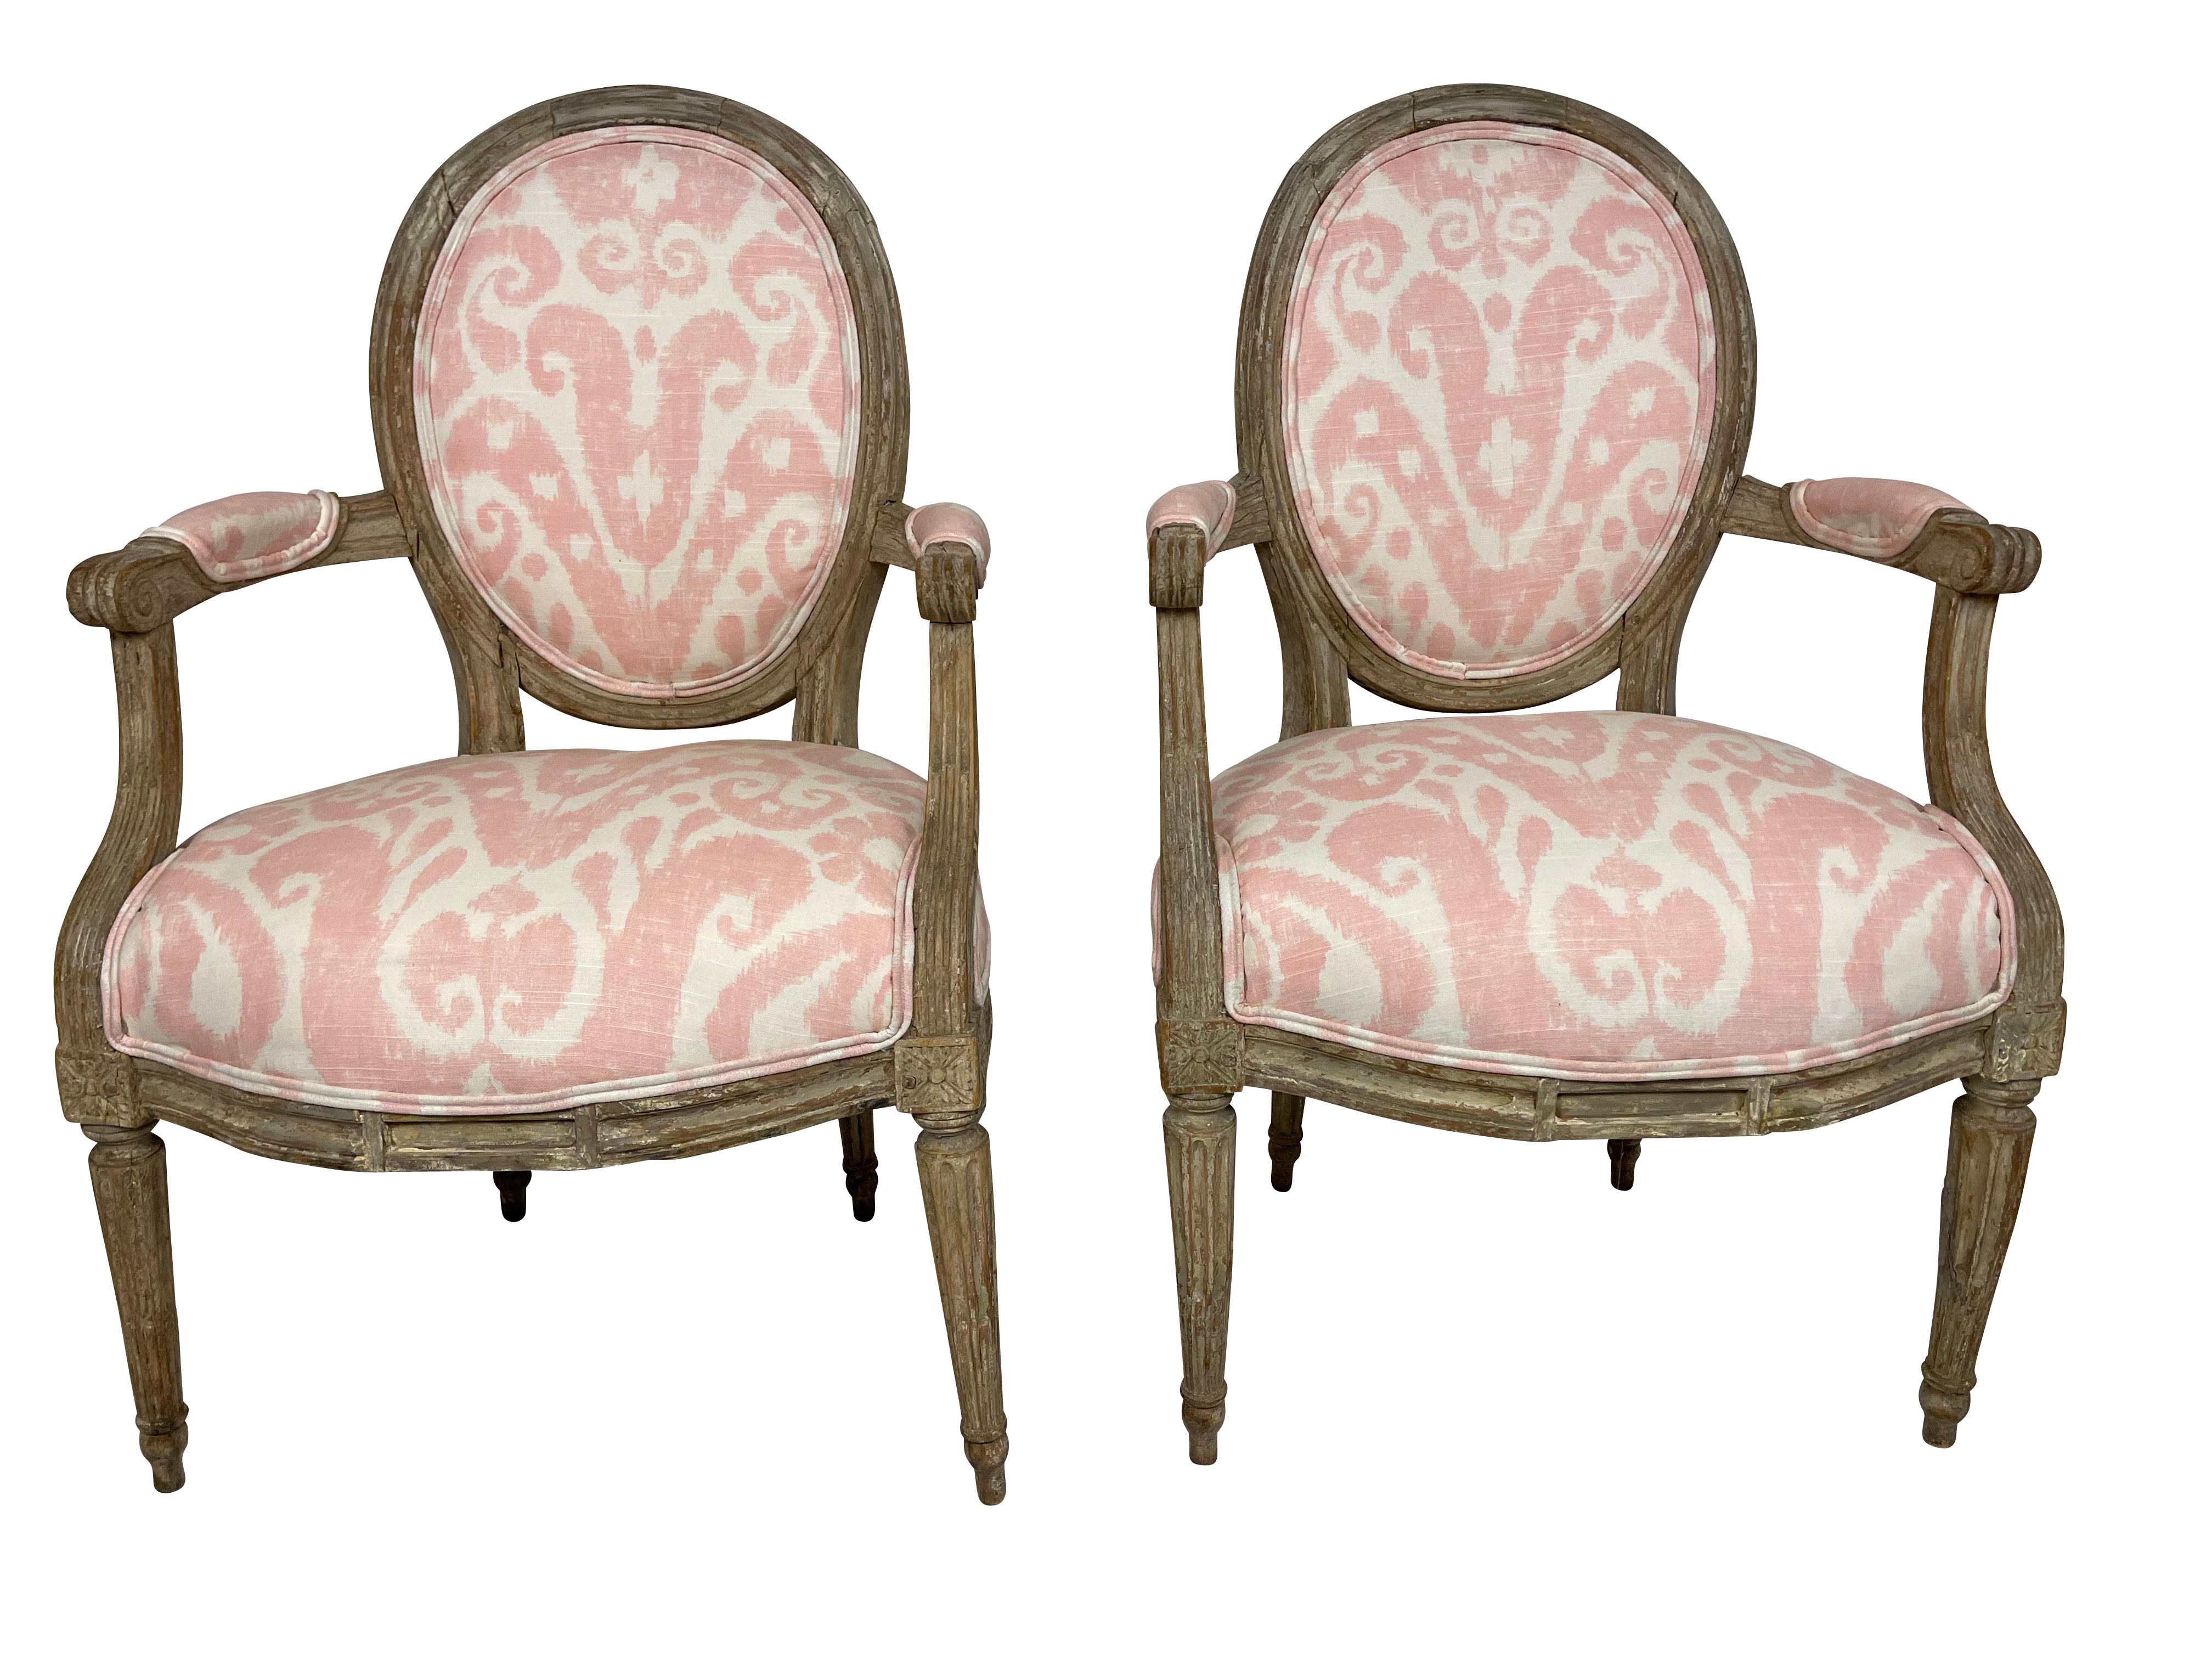 Paire de petits fauteuils de style Louis XVI, peints et sculptés en gris. Parfait pour une chambre de petite fille ou une chambre à coucher. Nouveau revêtement professionnel en tissu Ikat rose.